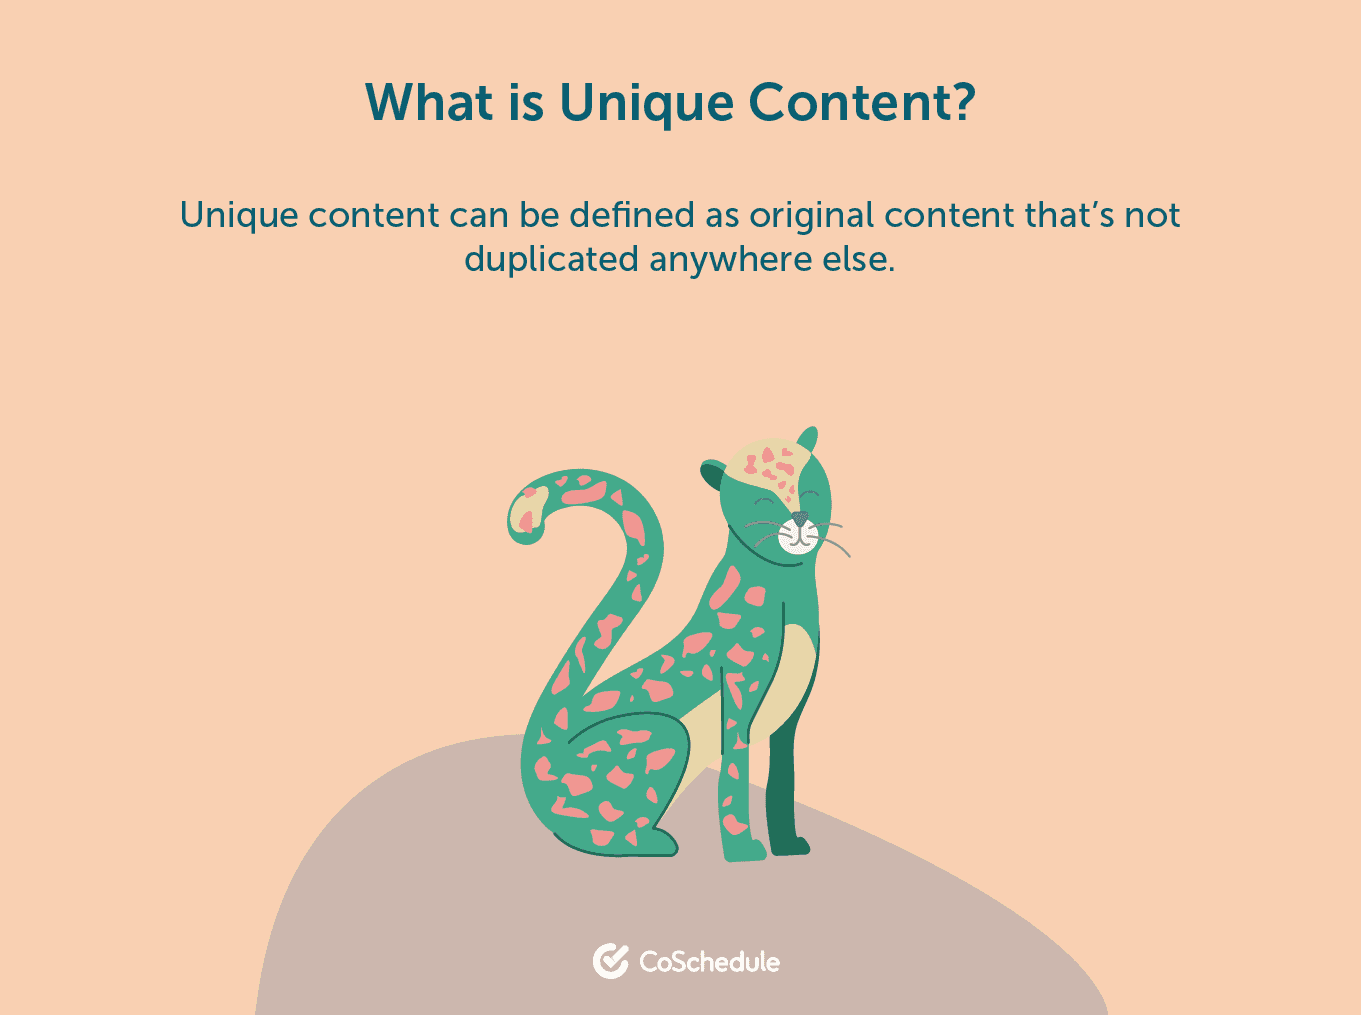 What is unique content?